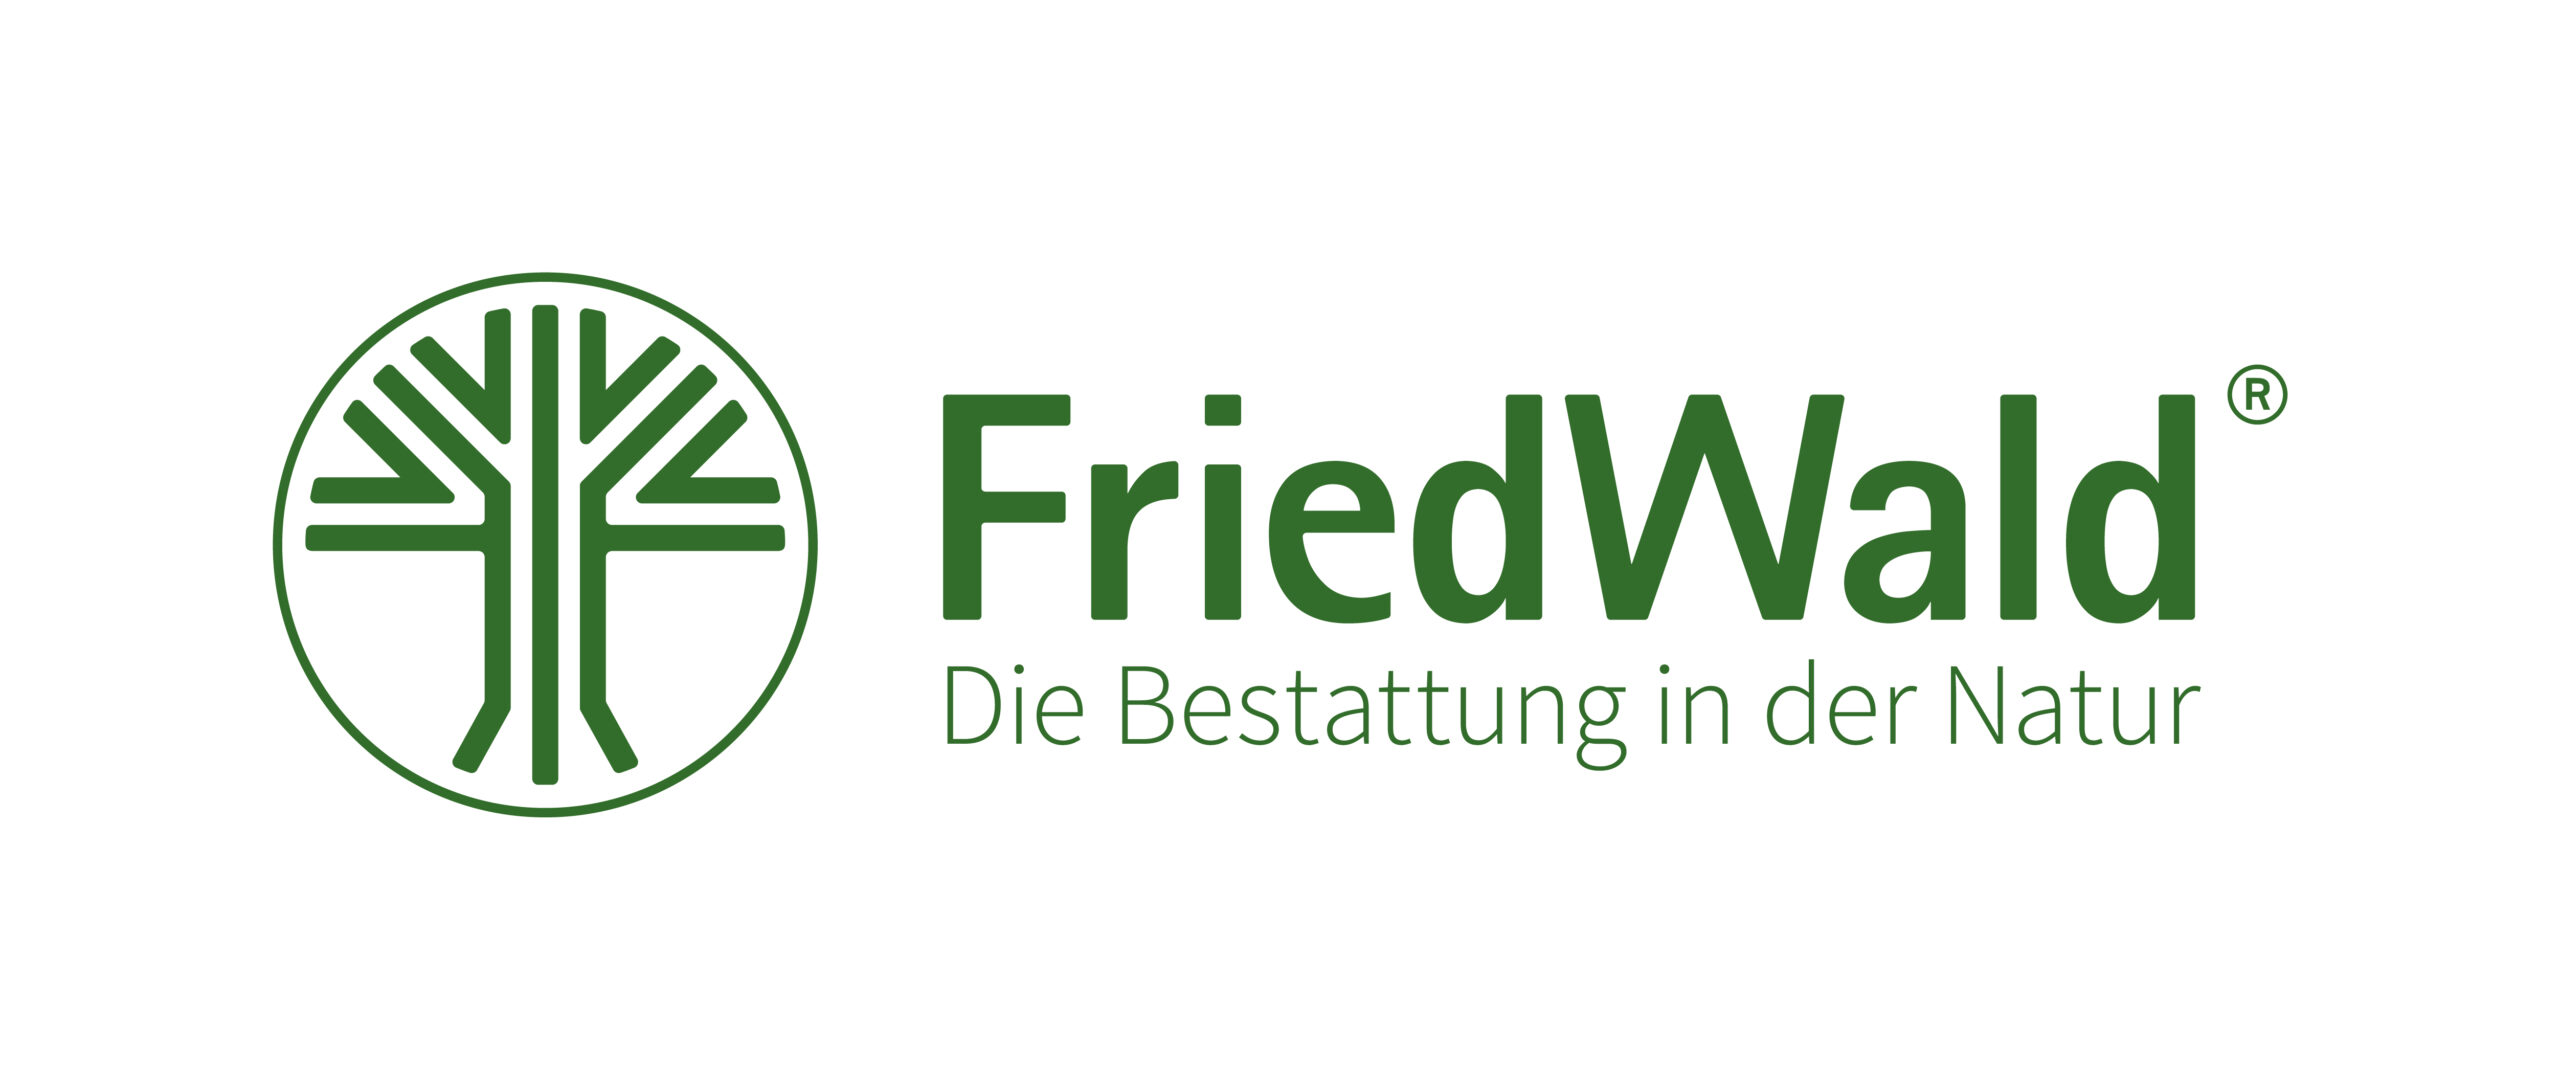 dieses Bild zeigt das Logo von FriedWald